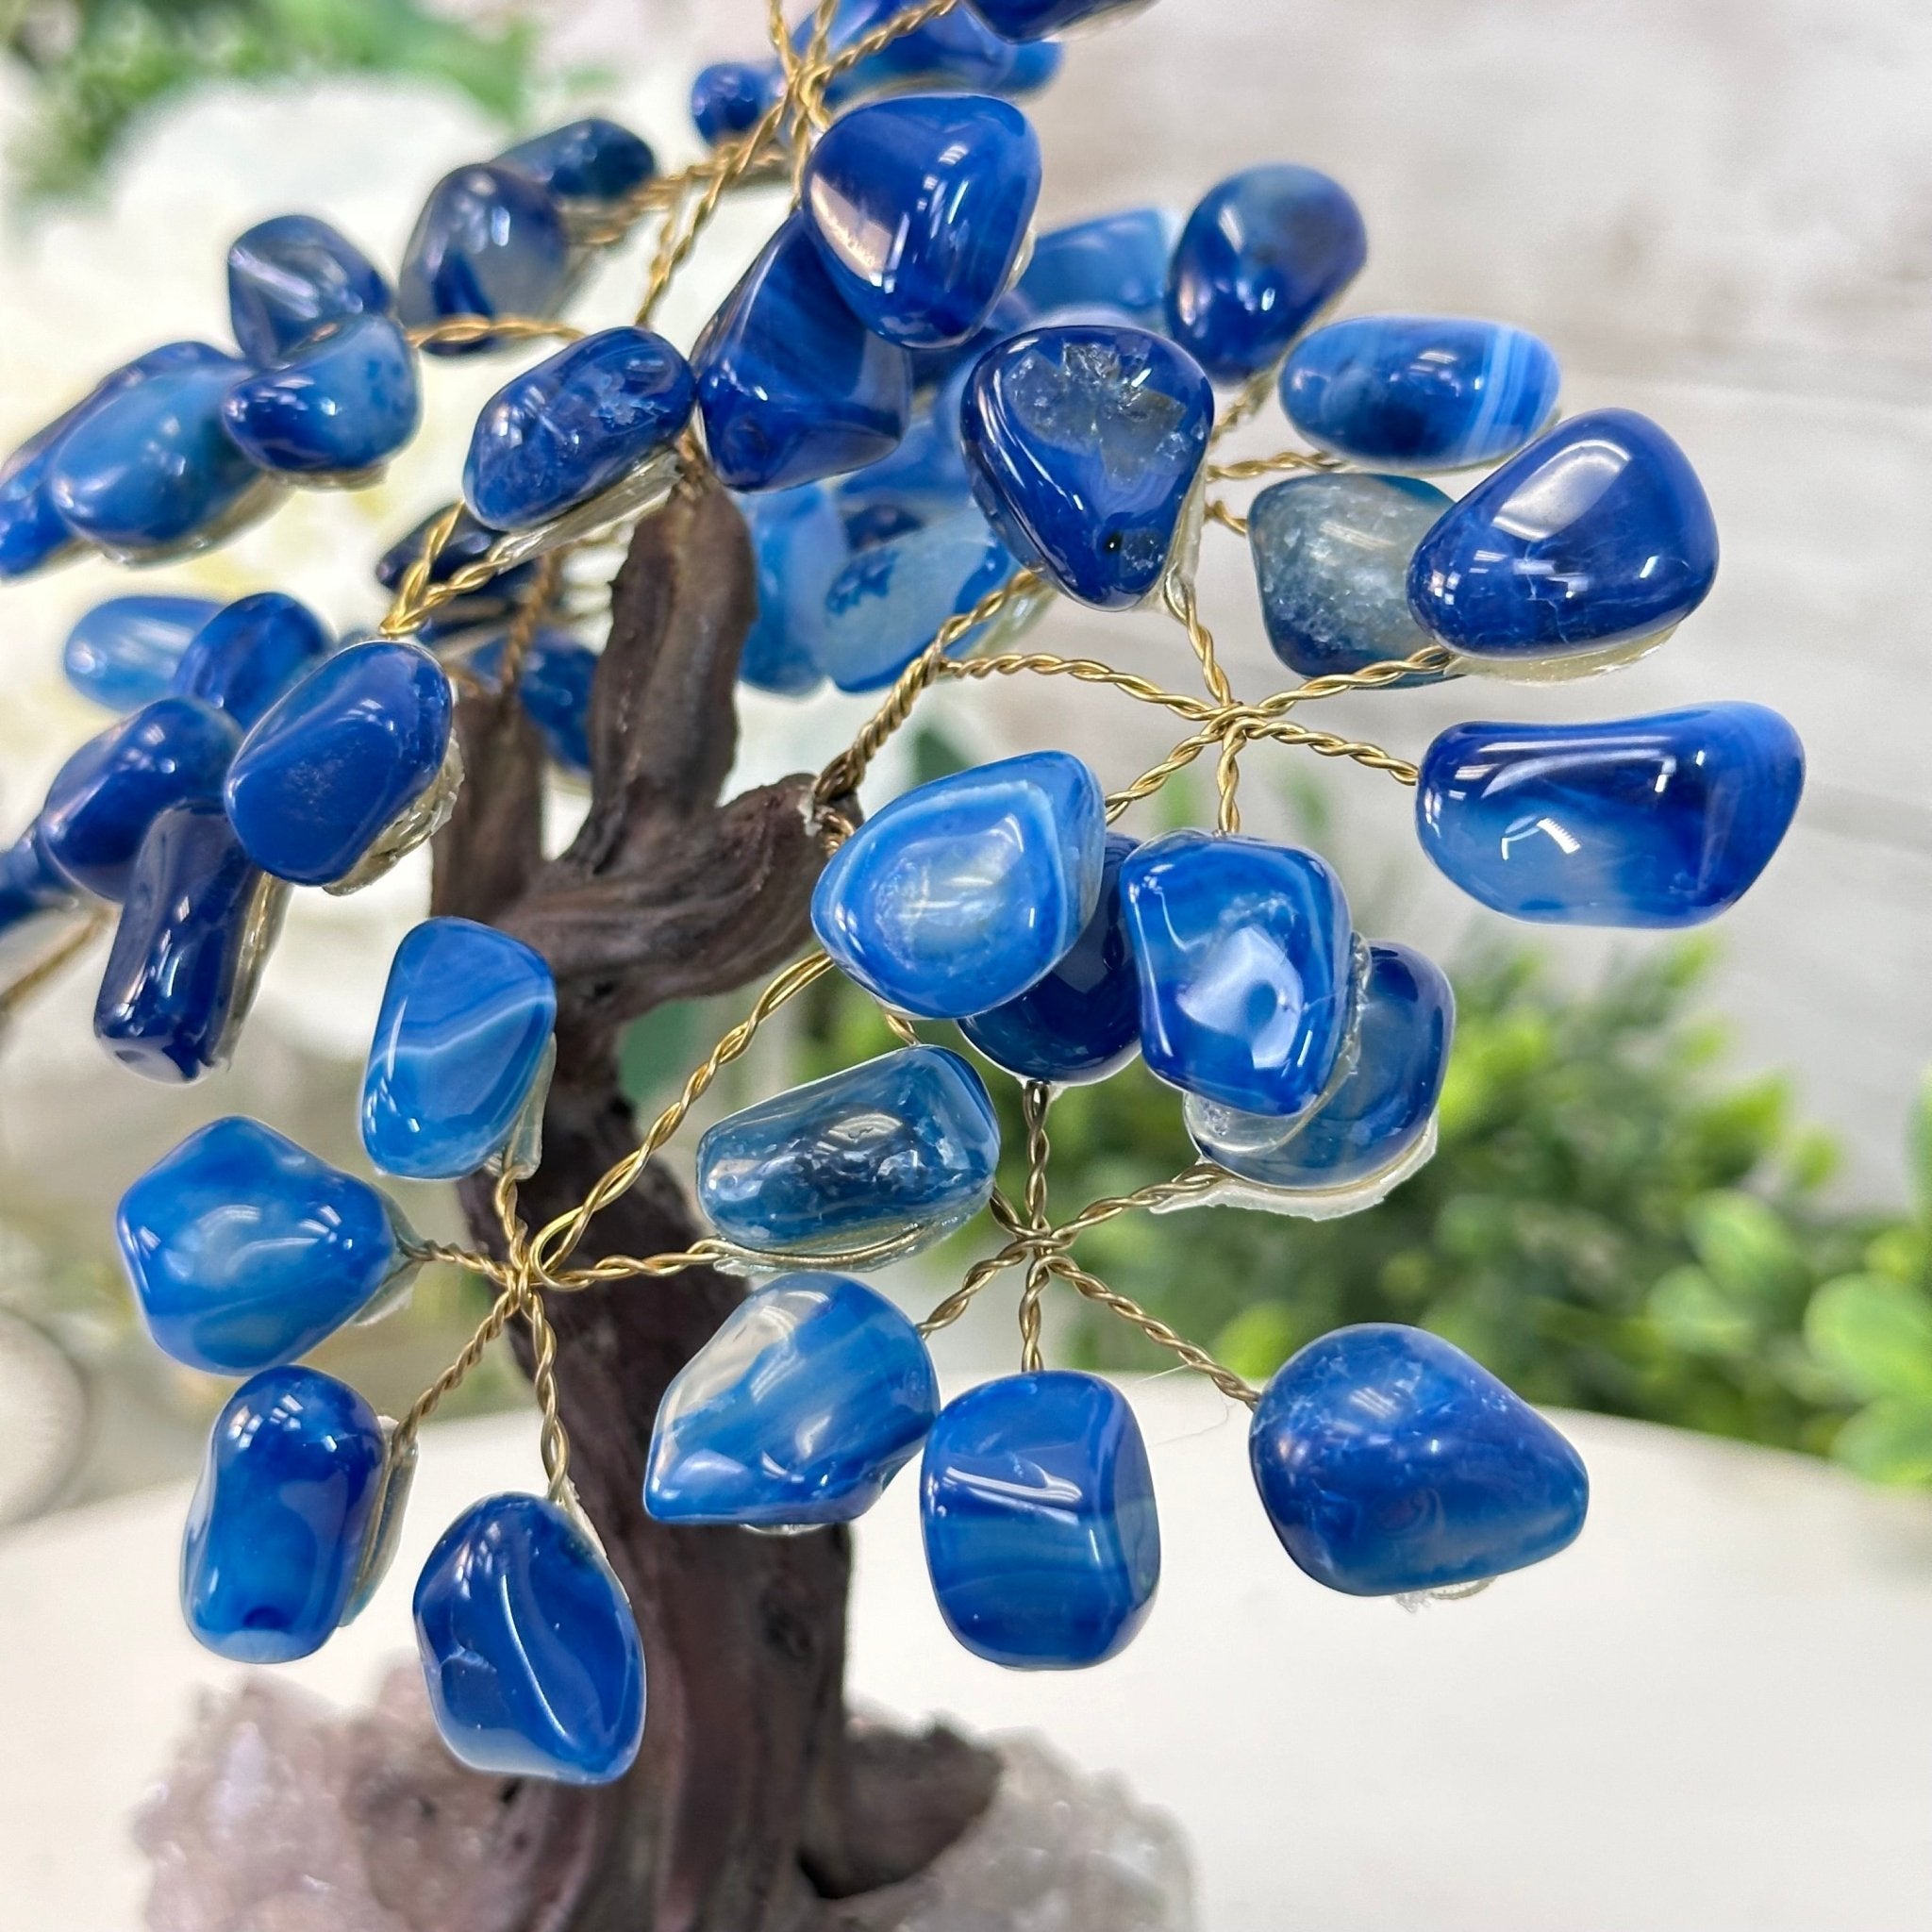 Blue Agate 7" Tall Handmade Gemstone Tree on a Crystal base, 60 Gems #5402BLUA - Brazil GemsBrazil GemsBlue Agate 7" Tall Handmade Gemstone Tree on a Crystal base, 60 Gems #5402BLUAGemstone Trees5402BLUA